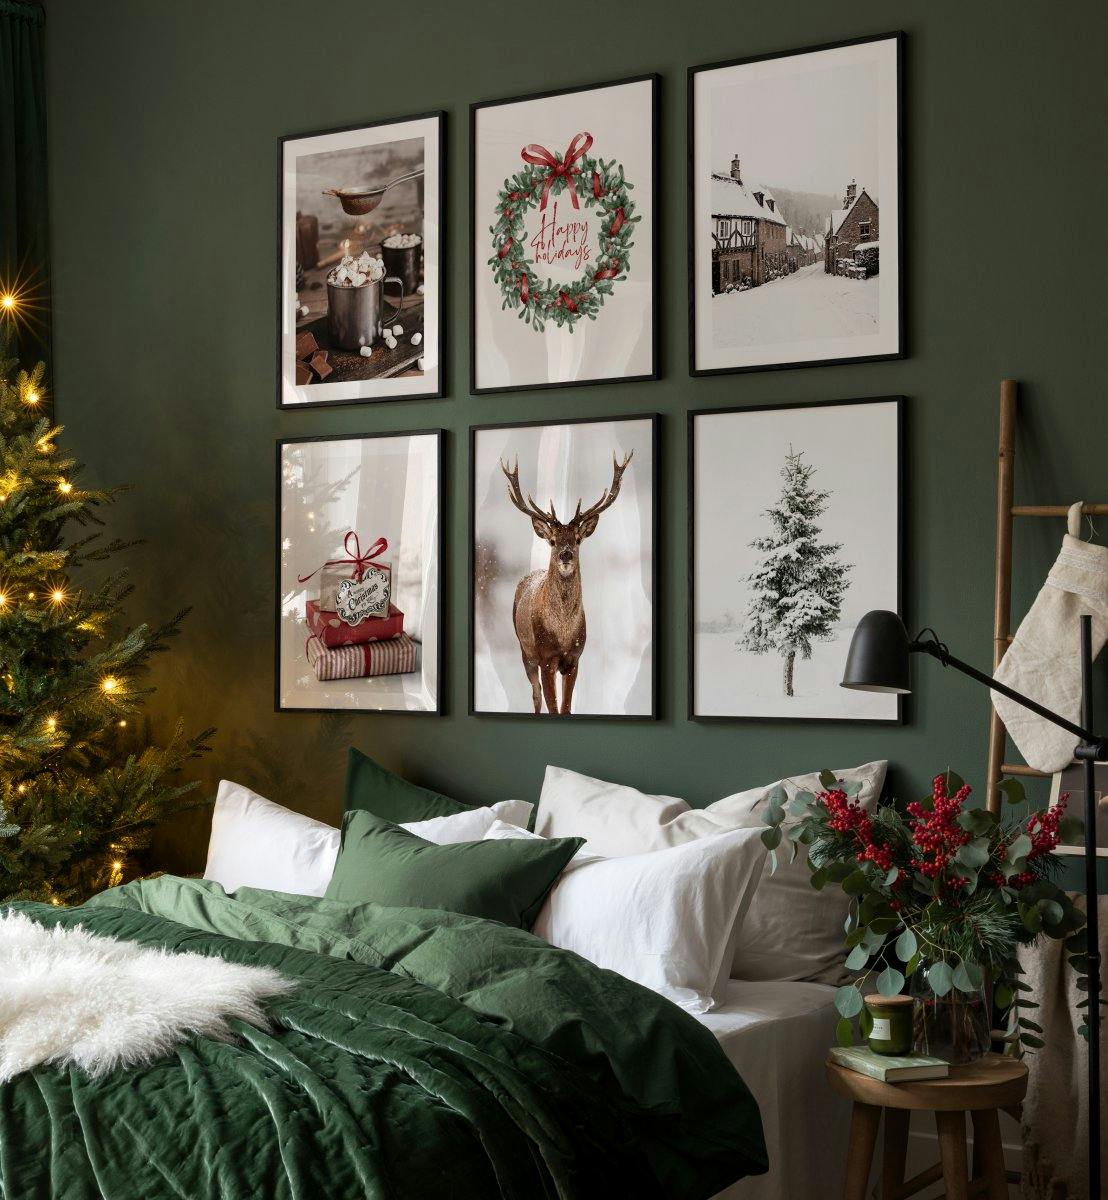 Kerstfoto's en illustraties in groen, rood en bruin voor een gezellige woonkamer.